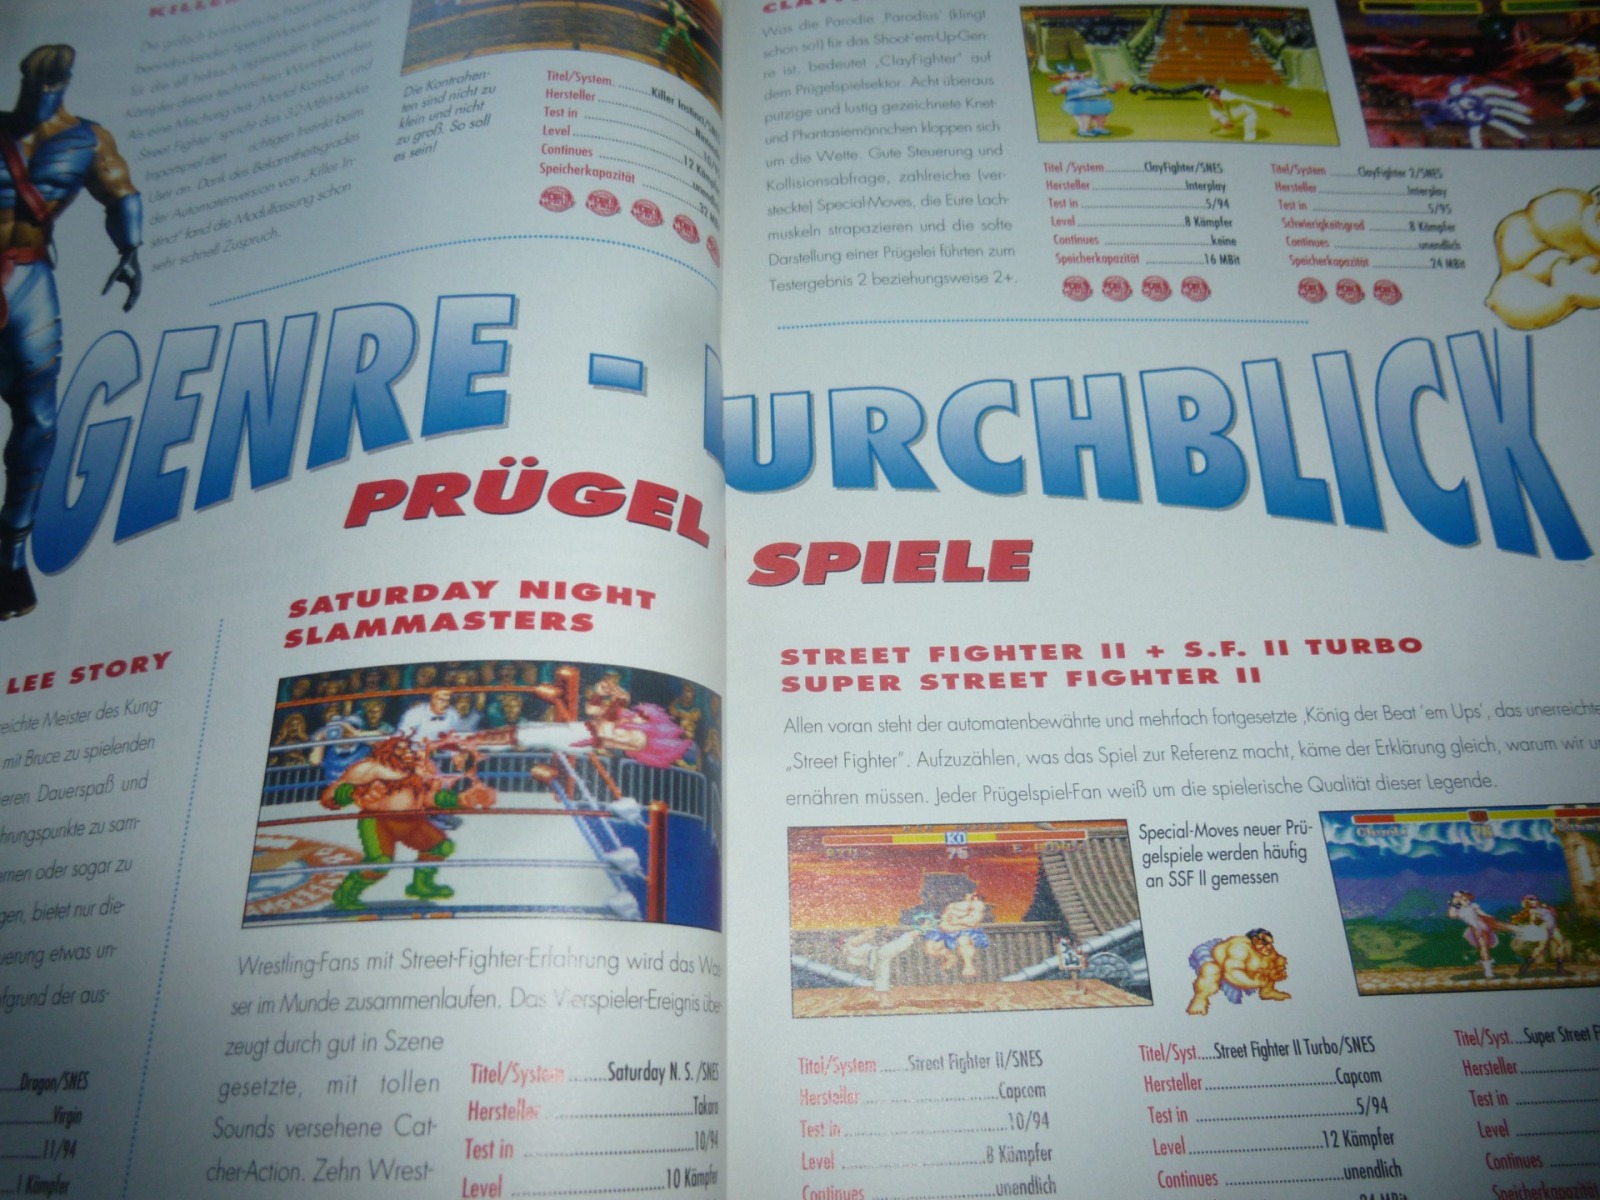 TOTAL Das unabhängige Magazin - 100% Nintendo - Ausgabe 2/96 1996 21